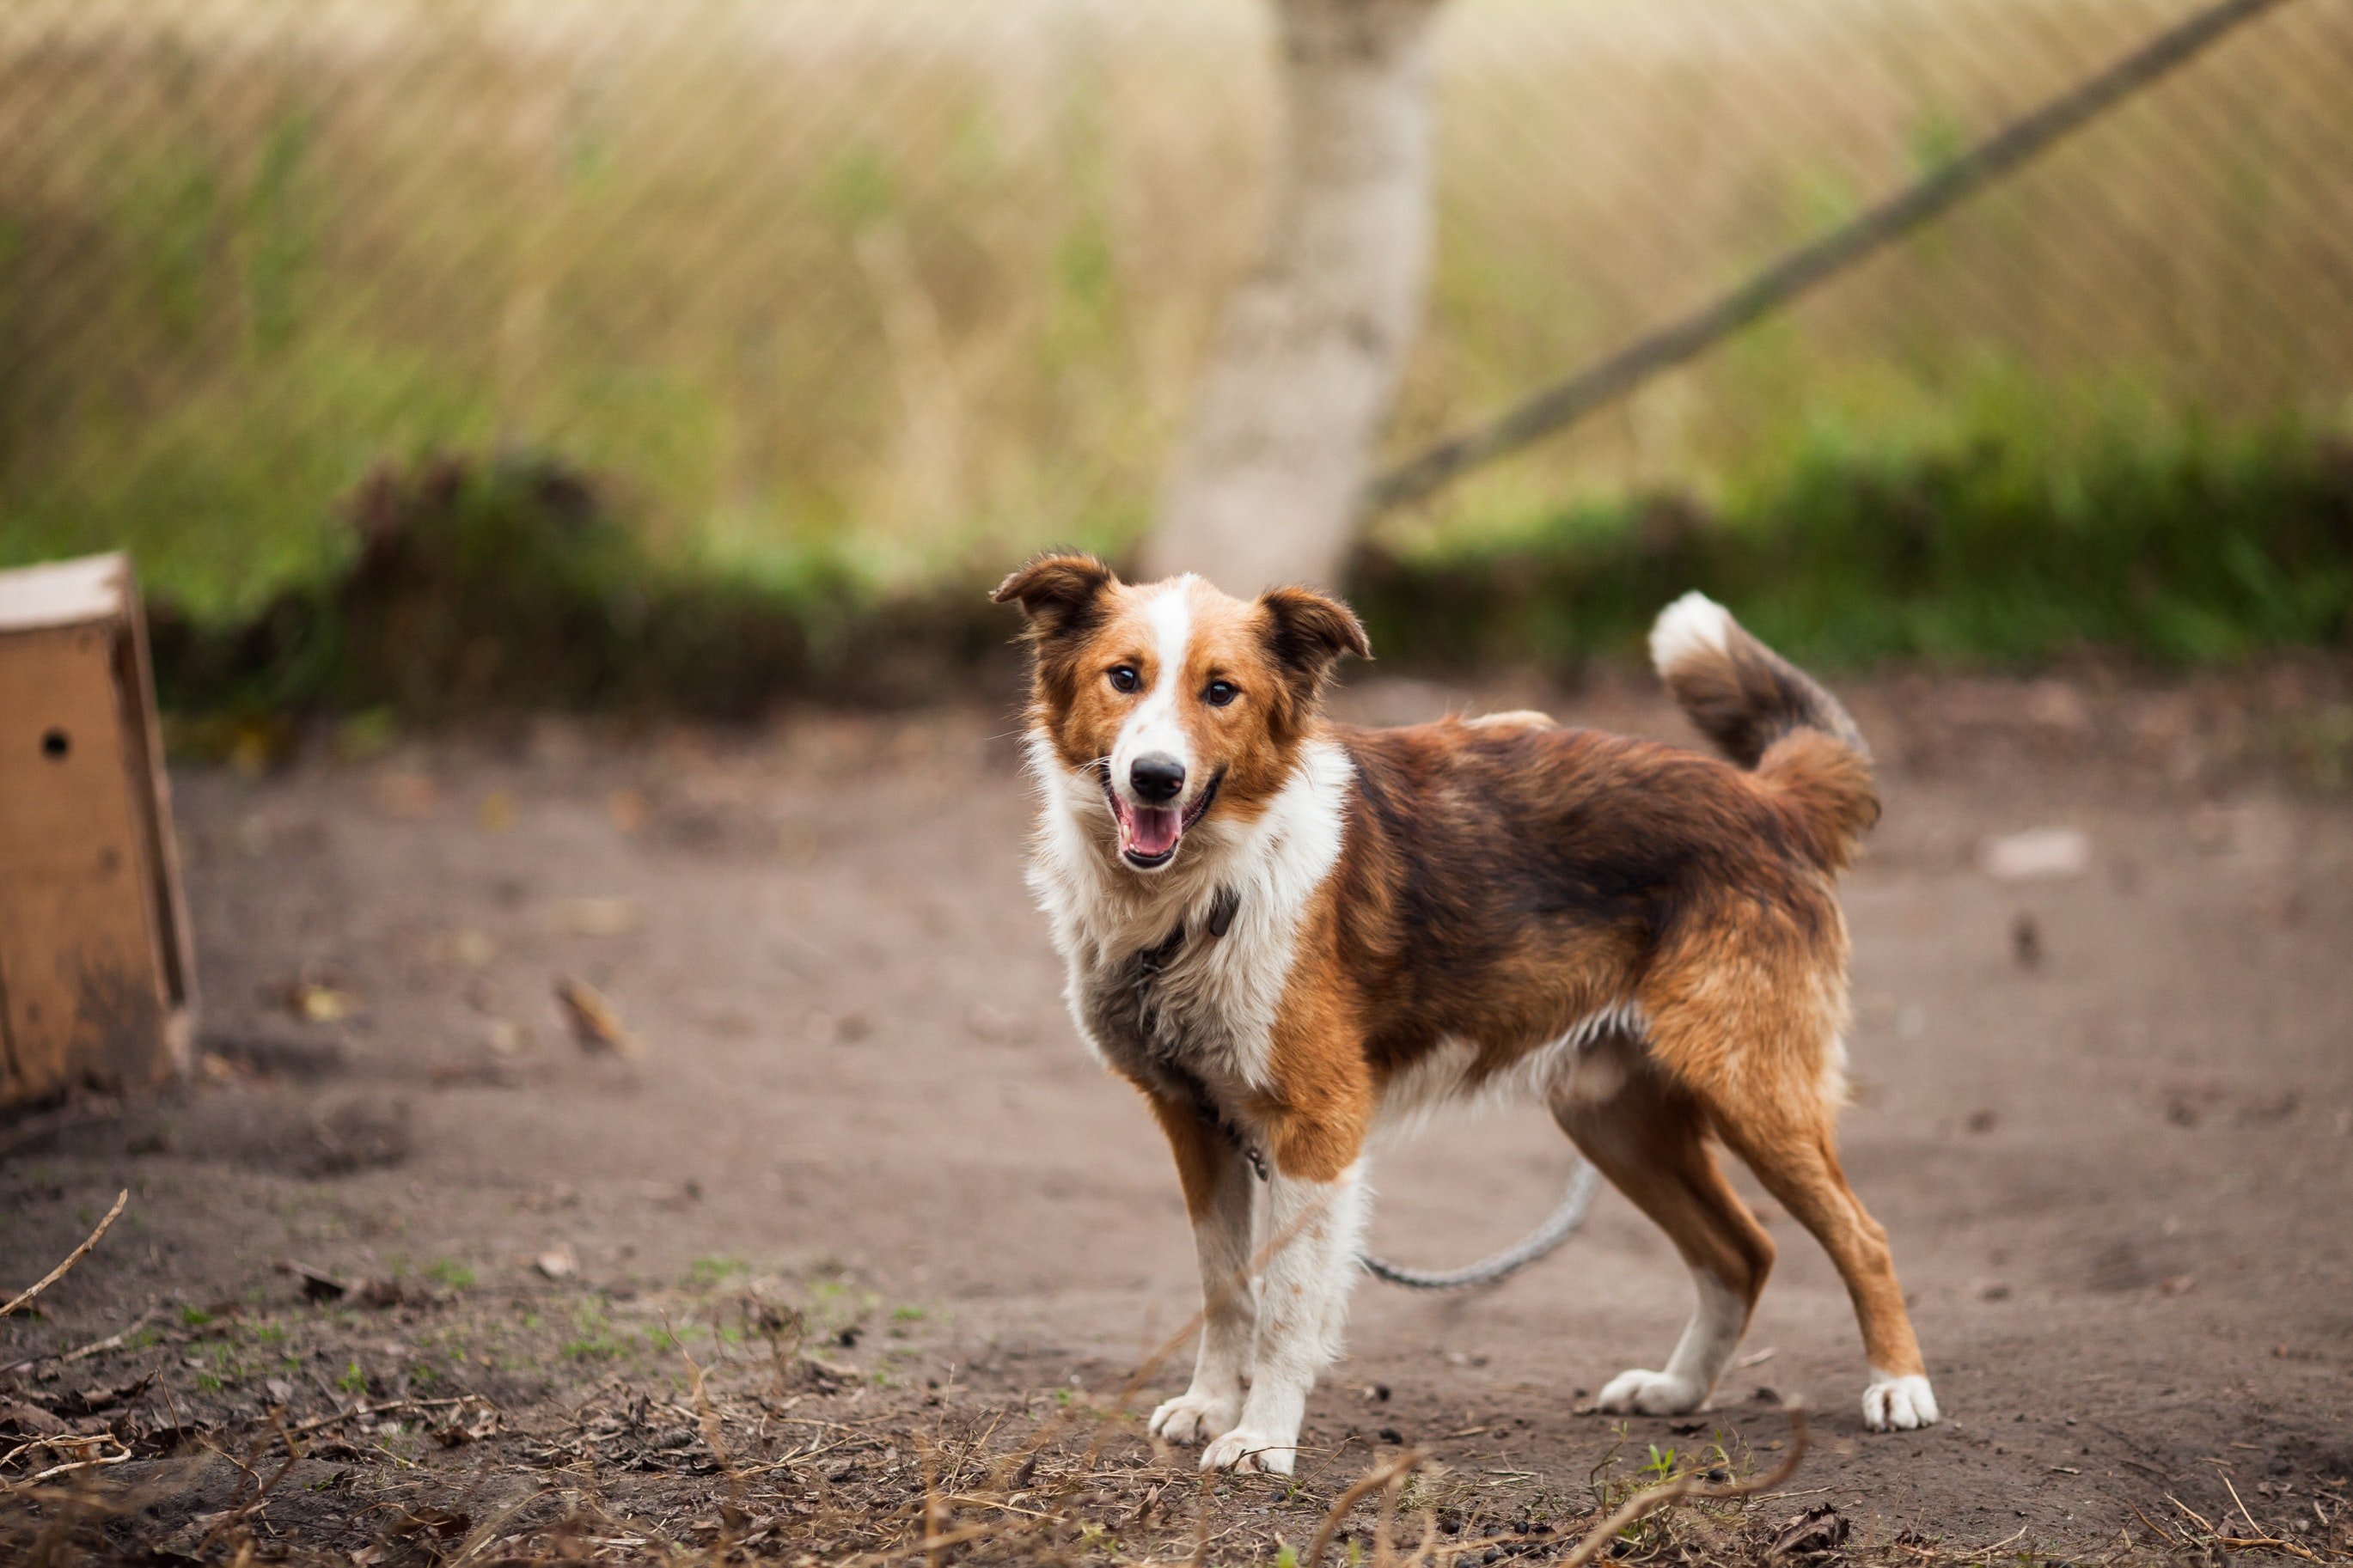 Der Bürgermeister hat Rebecca gebeten, ein Tierheim für Hunde zu leiten. | Quelle: Pexels